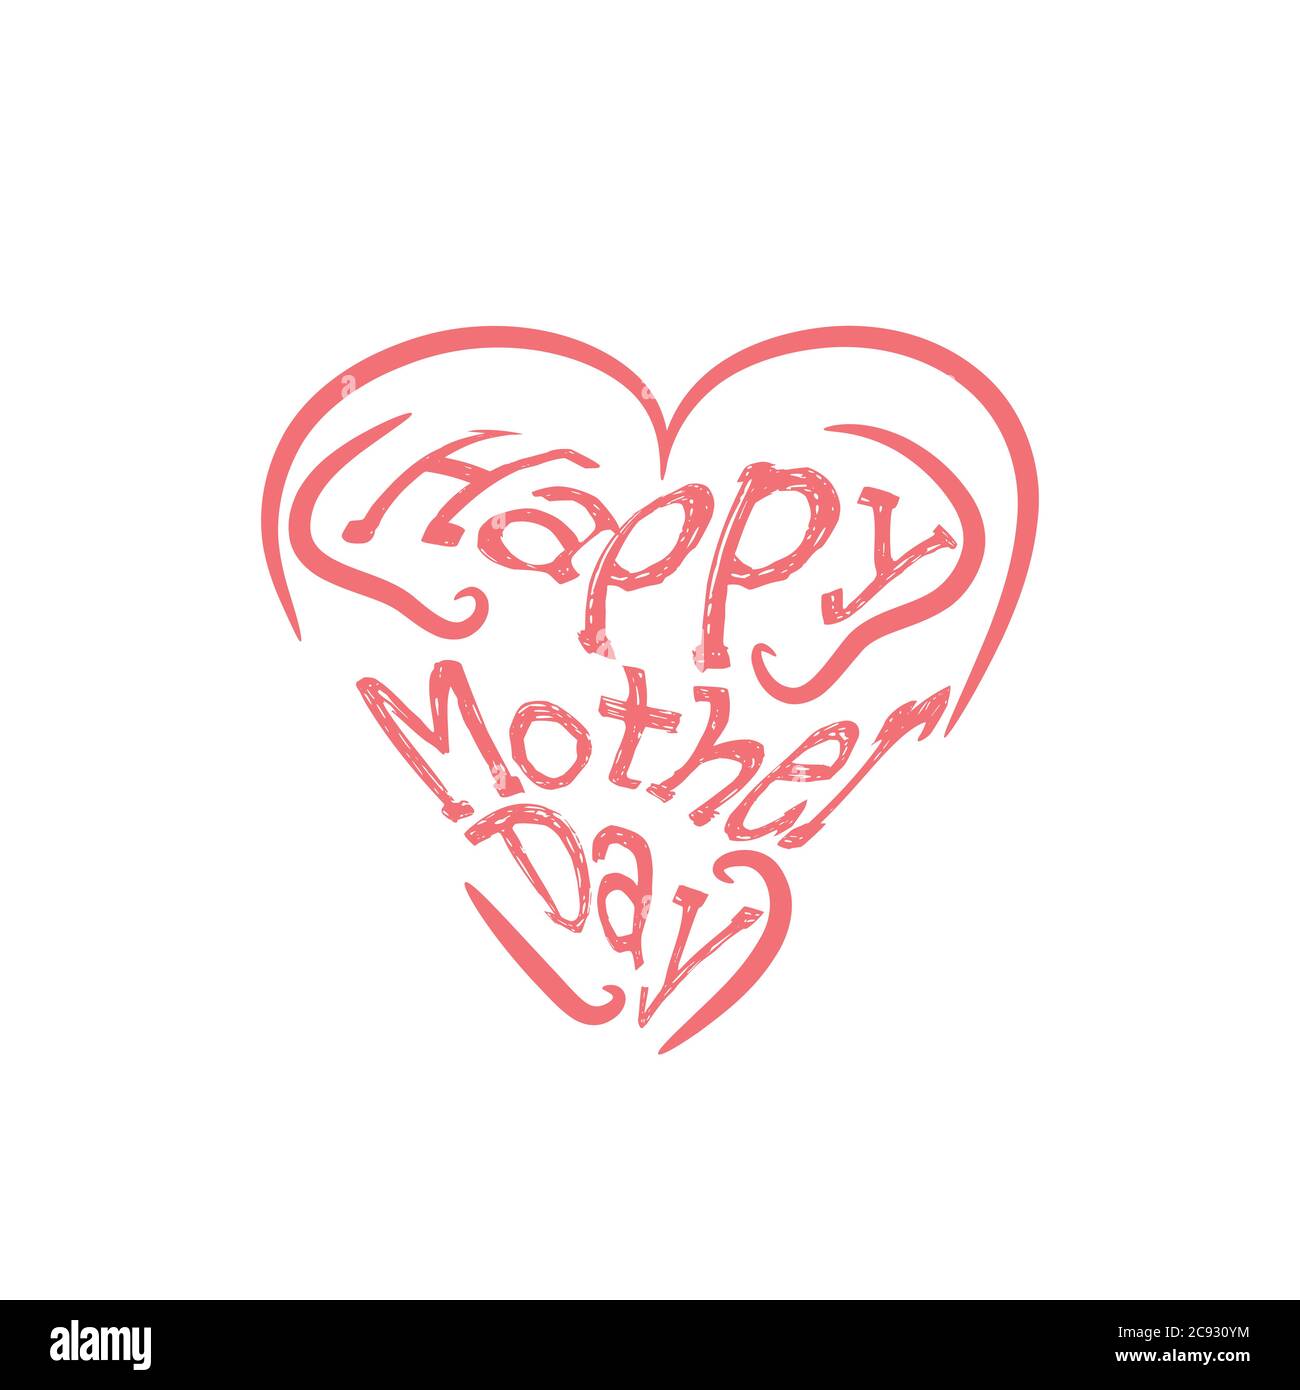 Cartolina del giorno della mamma felice. Lettere per le festività. Illustrazione dell'inchiostro. Calligrafia moderna a pennello. Isolato su sfondo bianco. Illustrazione Vettoriale